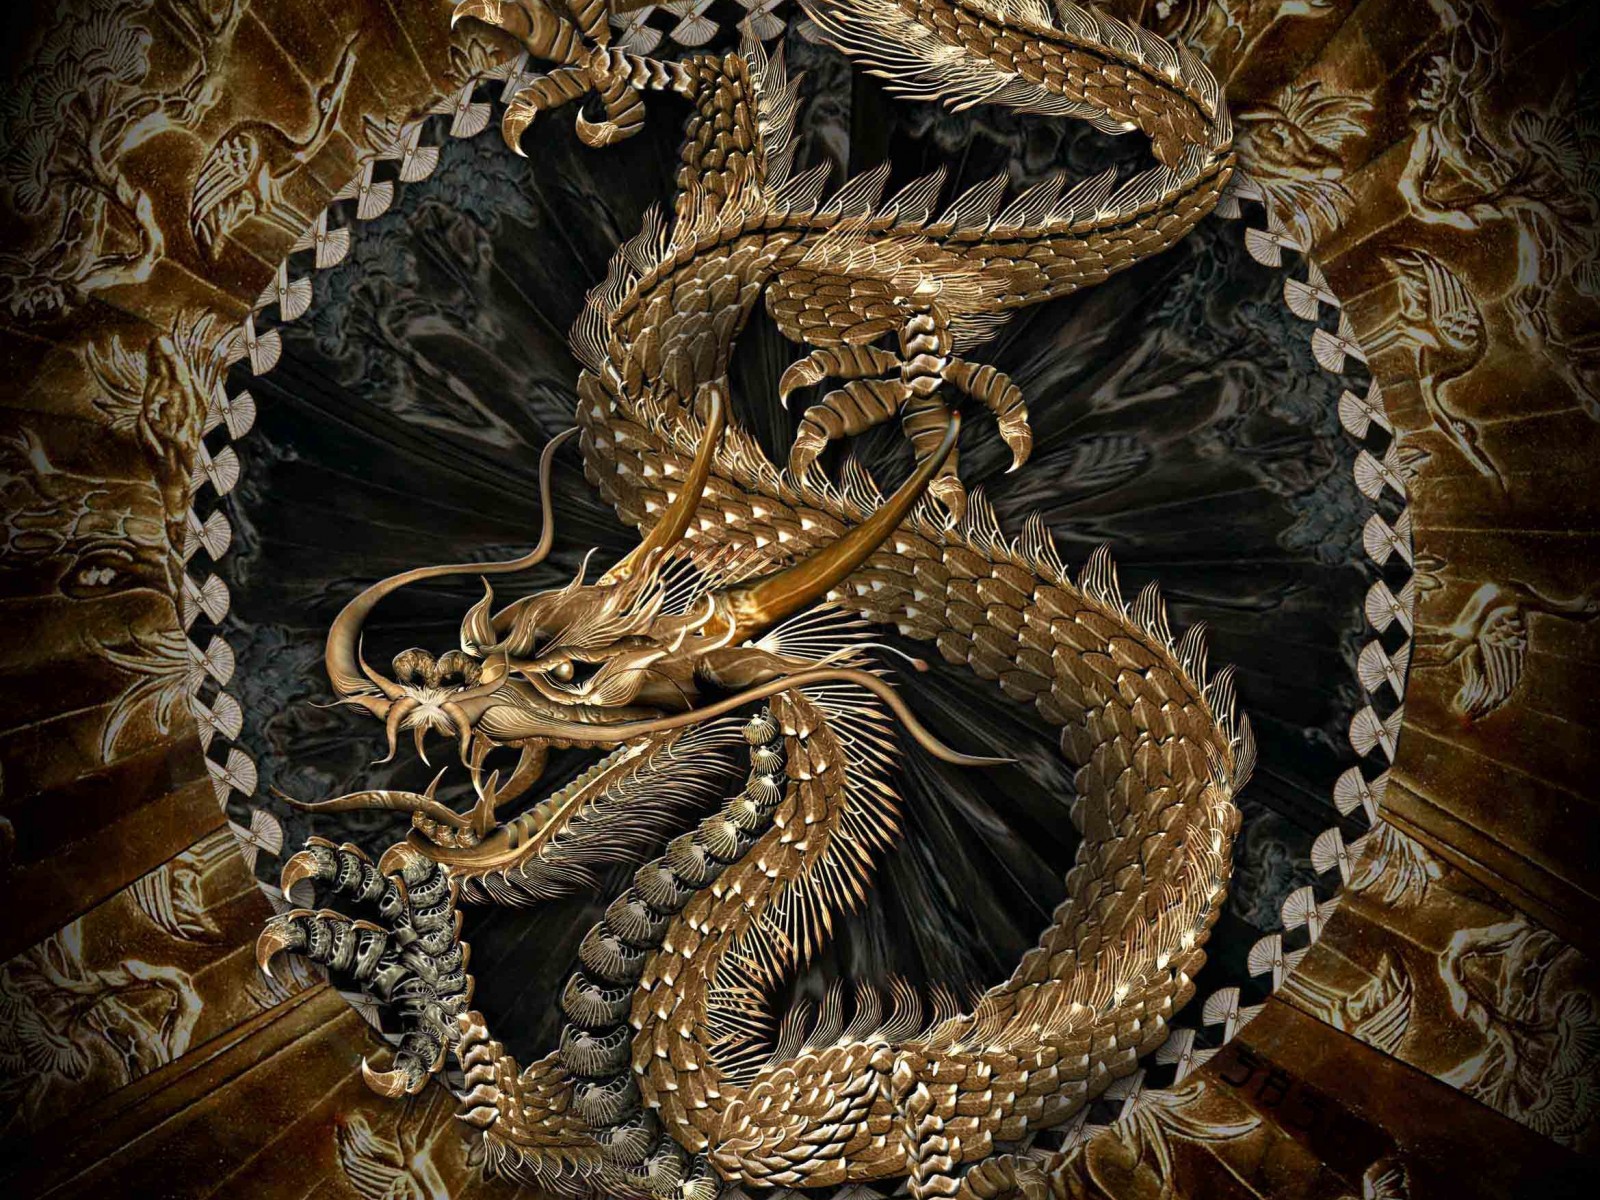 Dragon Desktop Wallpaper On Latoro